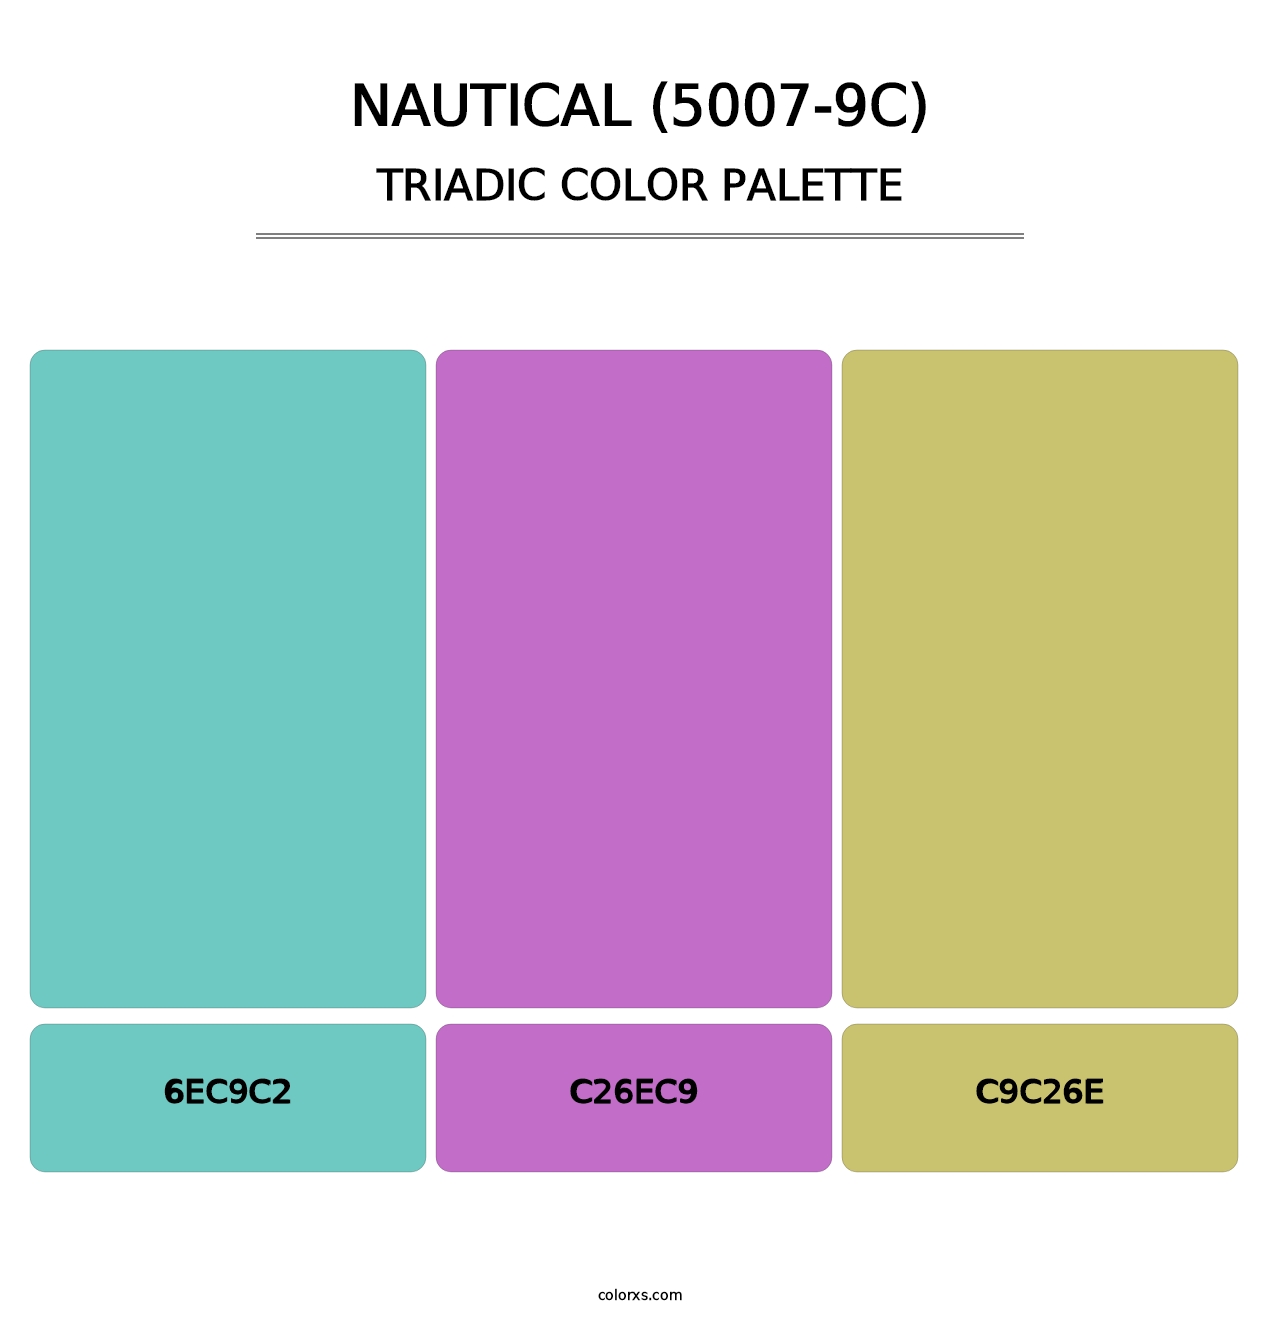 Nautical (5007-9C) - Triadic Color Palette